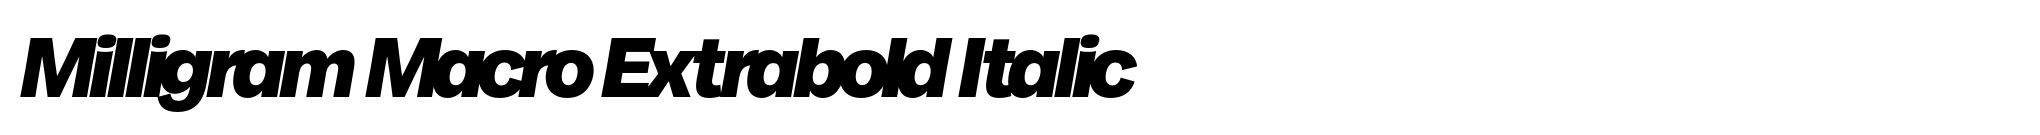 Milligram Macro Extrabold Italic image